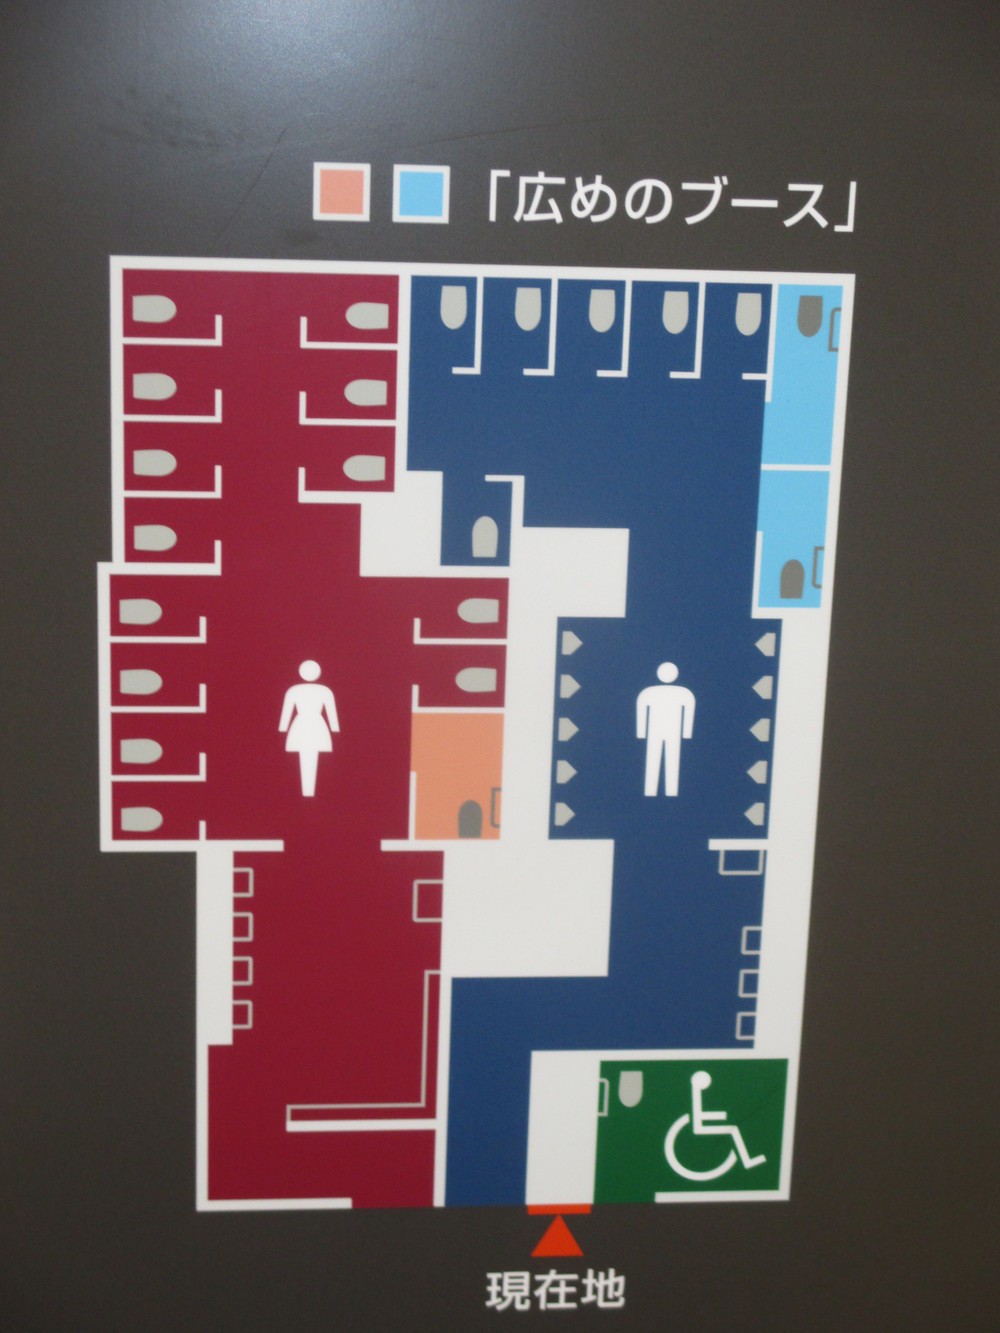 トイレの表示は立派だが、女性には冷たい。（JR新橋駅で）